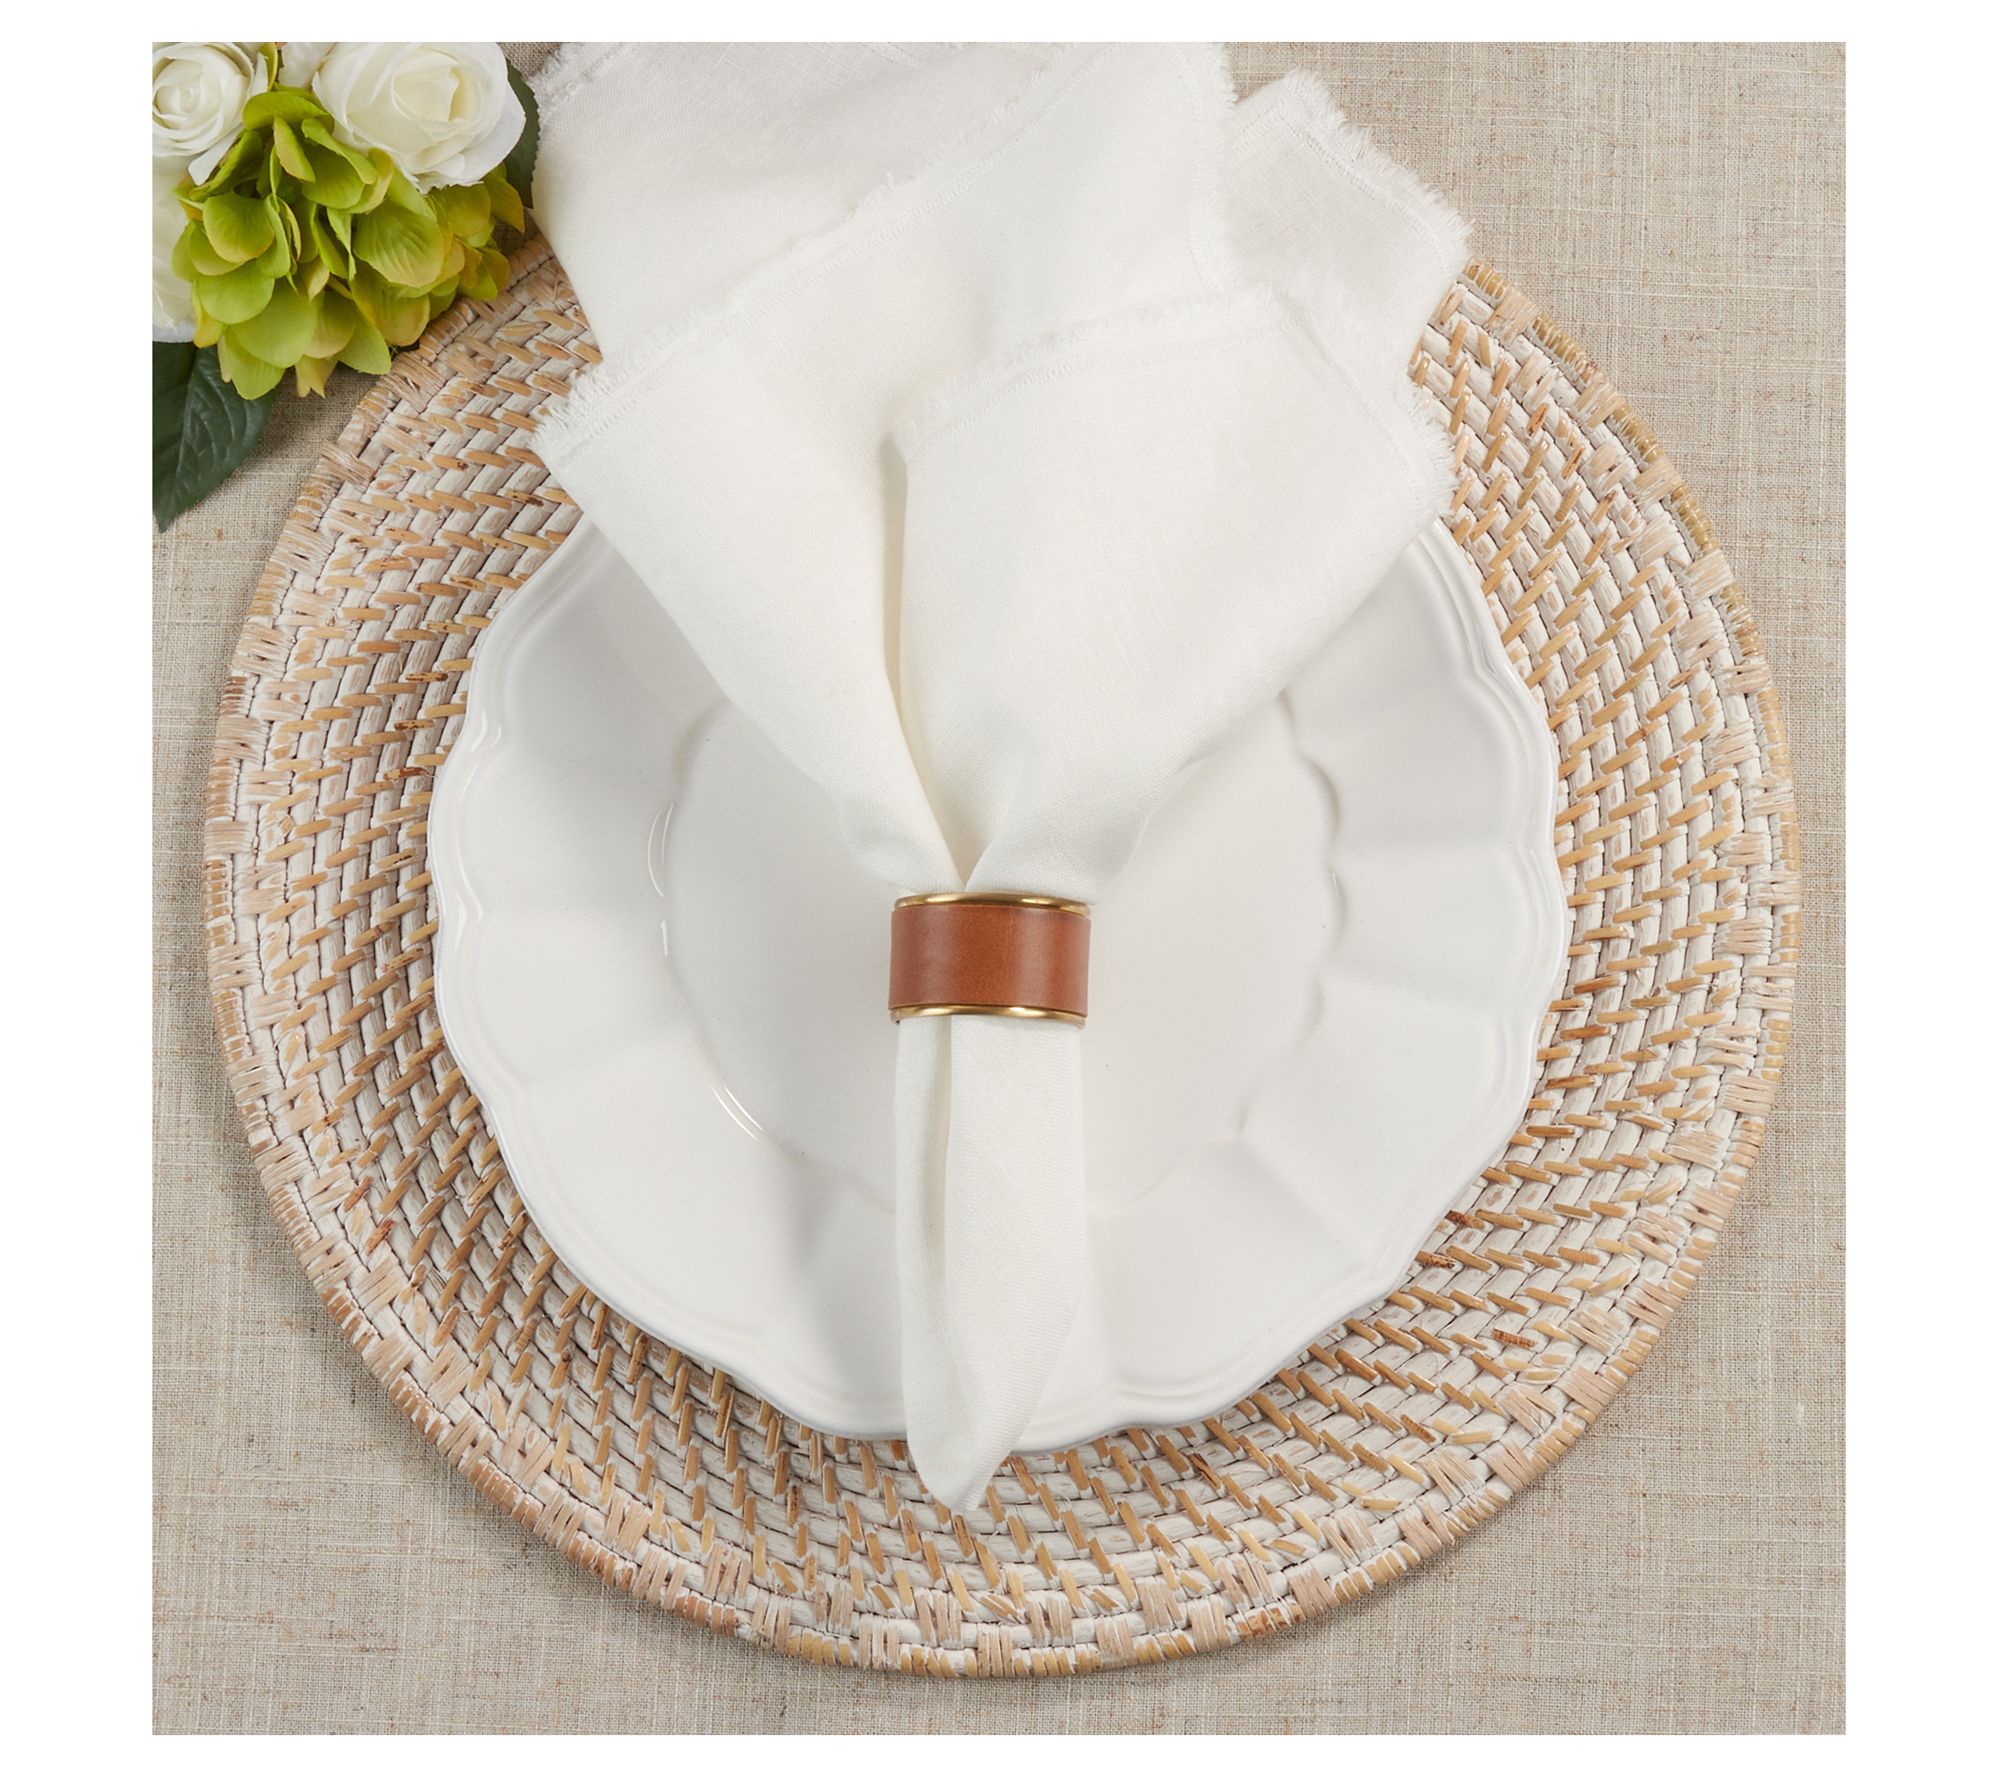 C&f Home Fountain & White Cotton Napkin Set Of 6 : Target